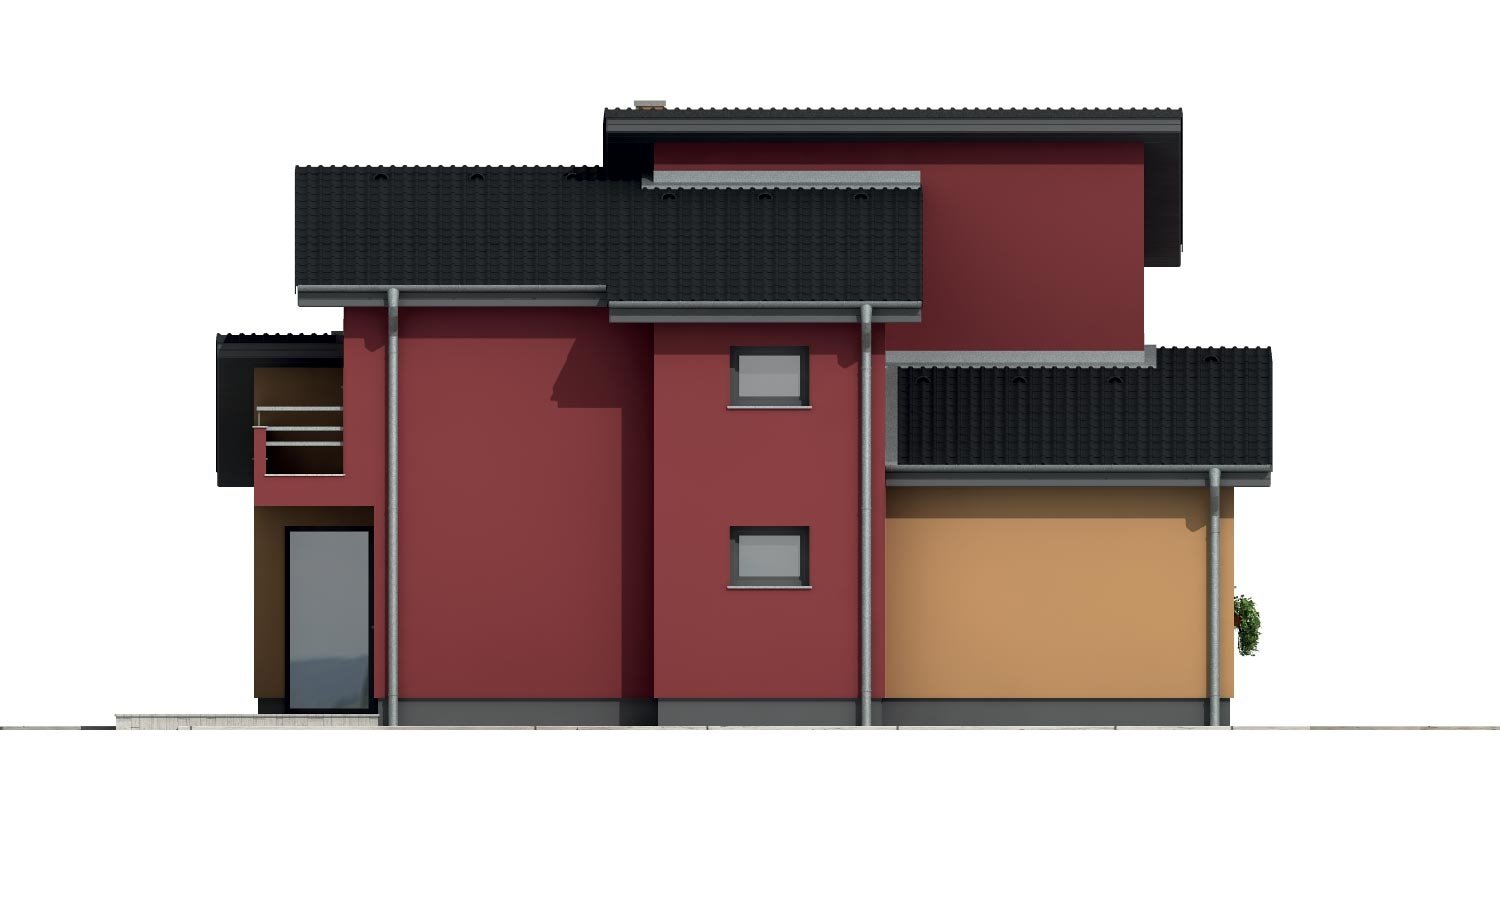 Pohľad 2. - Moderní poschoďový dům s pokojem v přízemí a pultovými střechami.